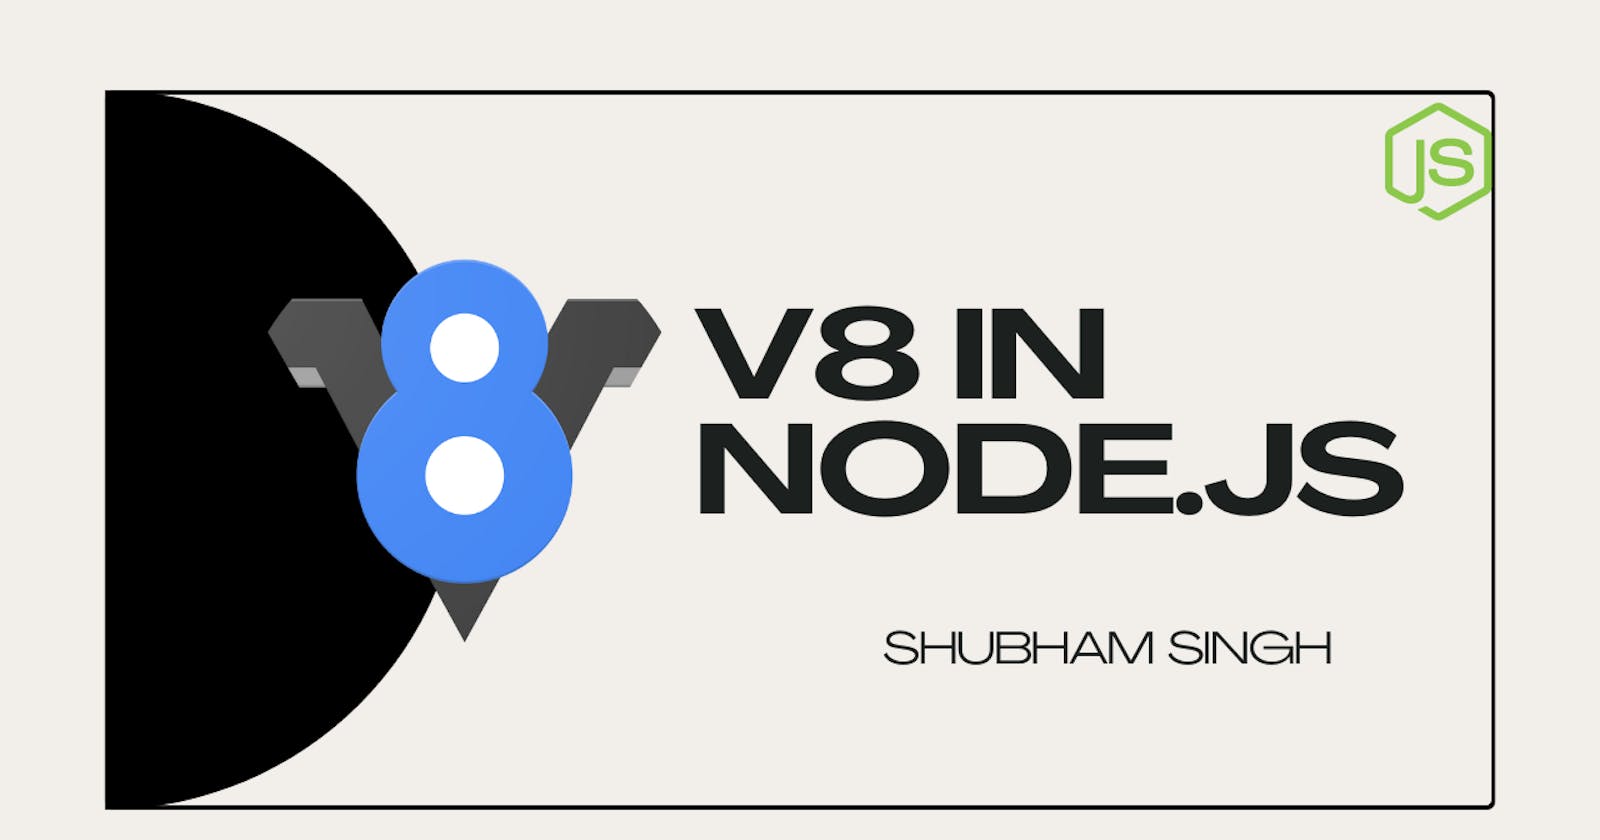 v8 engine in Node.js